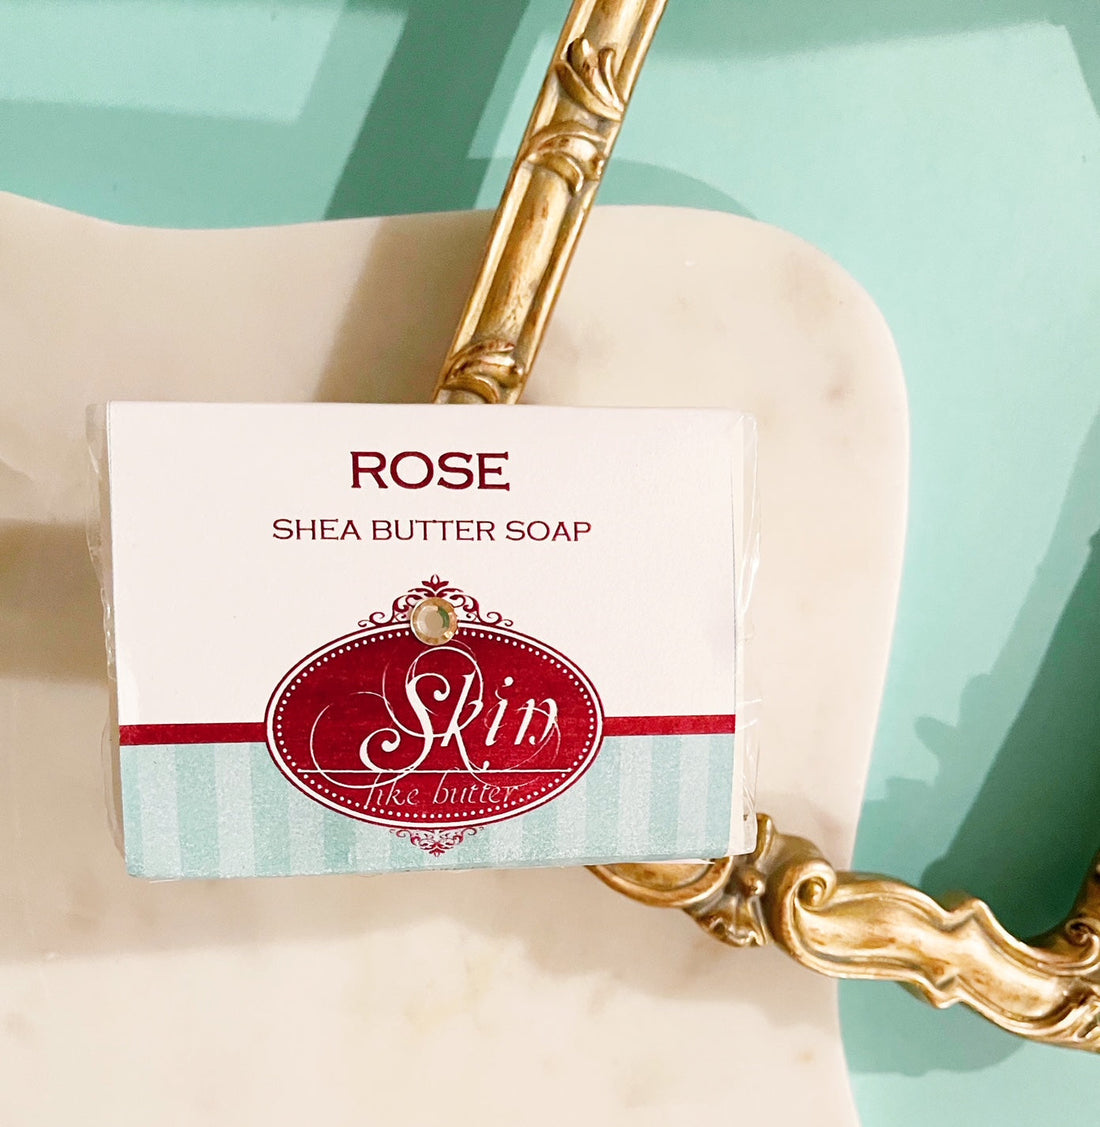 ROSE VANILLA -  Skin Like Butter - Shea Butter 4 oz Soap Bar